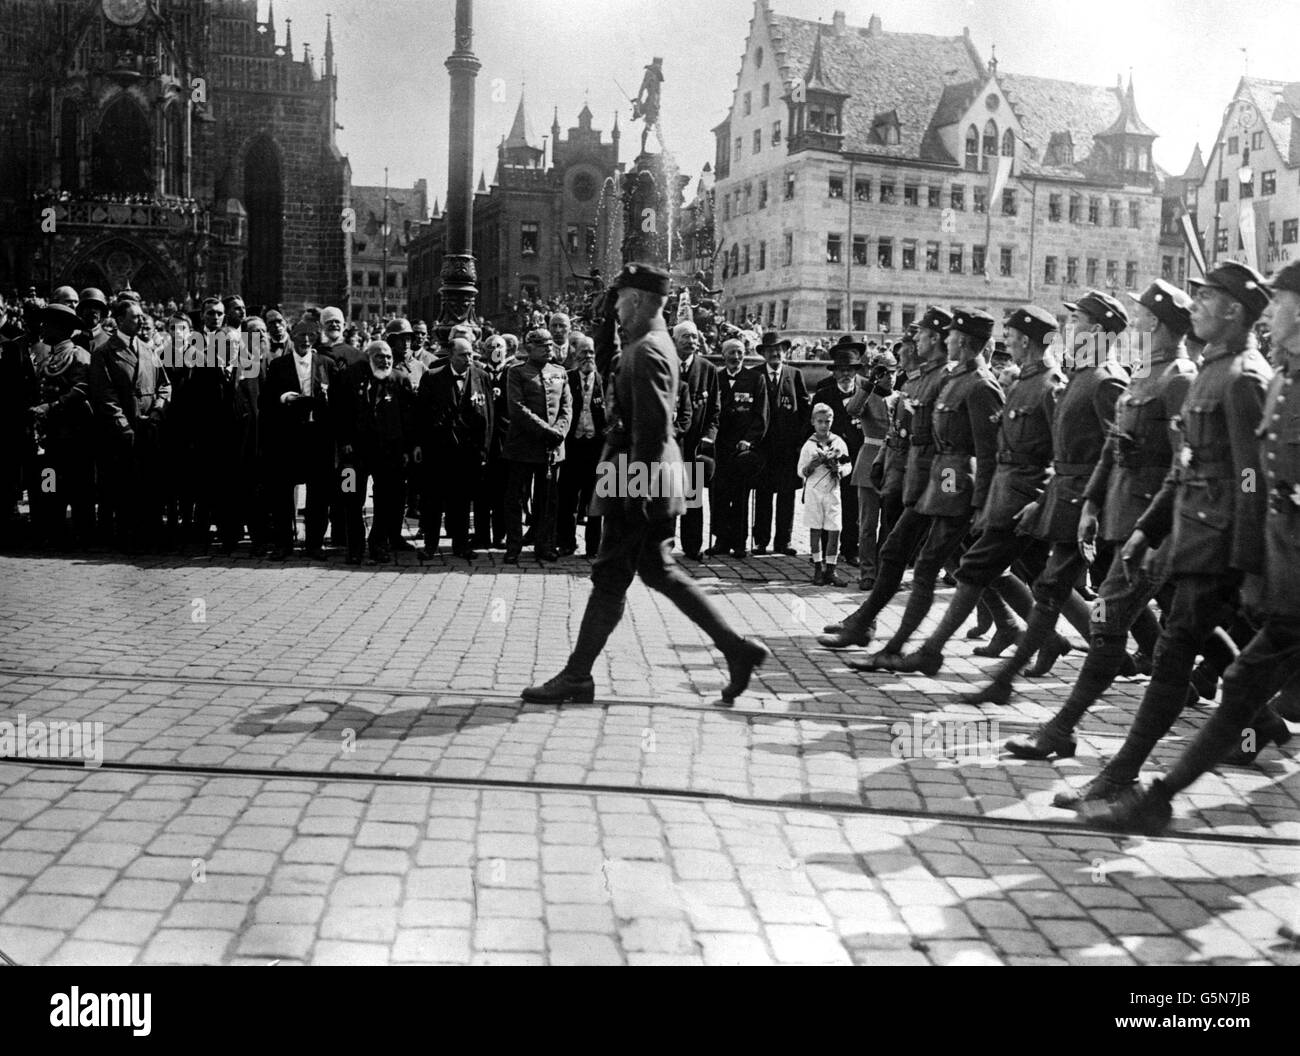 1923: Stosstruppen marschieren am 'Großen Deutschen Tag' in Nürnberg, Bayern, vorbei an ihrem Führer, Adolf Hitler (2. Links, Trenchcoat), Politikern und bayerischen Mitgliedern der ehemaligen deutschen Reichsarmee. Schätzungsweise 100,000 Personen haben an der Veranstaltung teilgenommen. Stockfoto